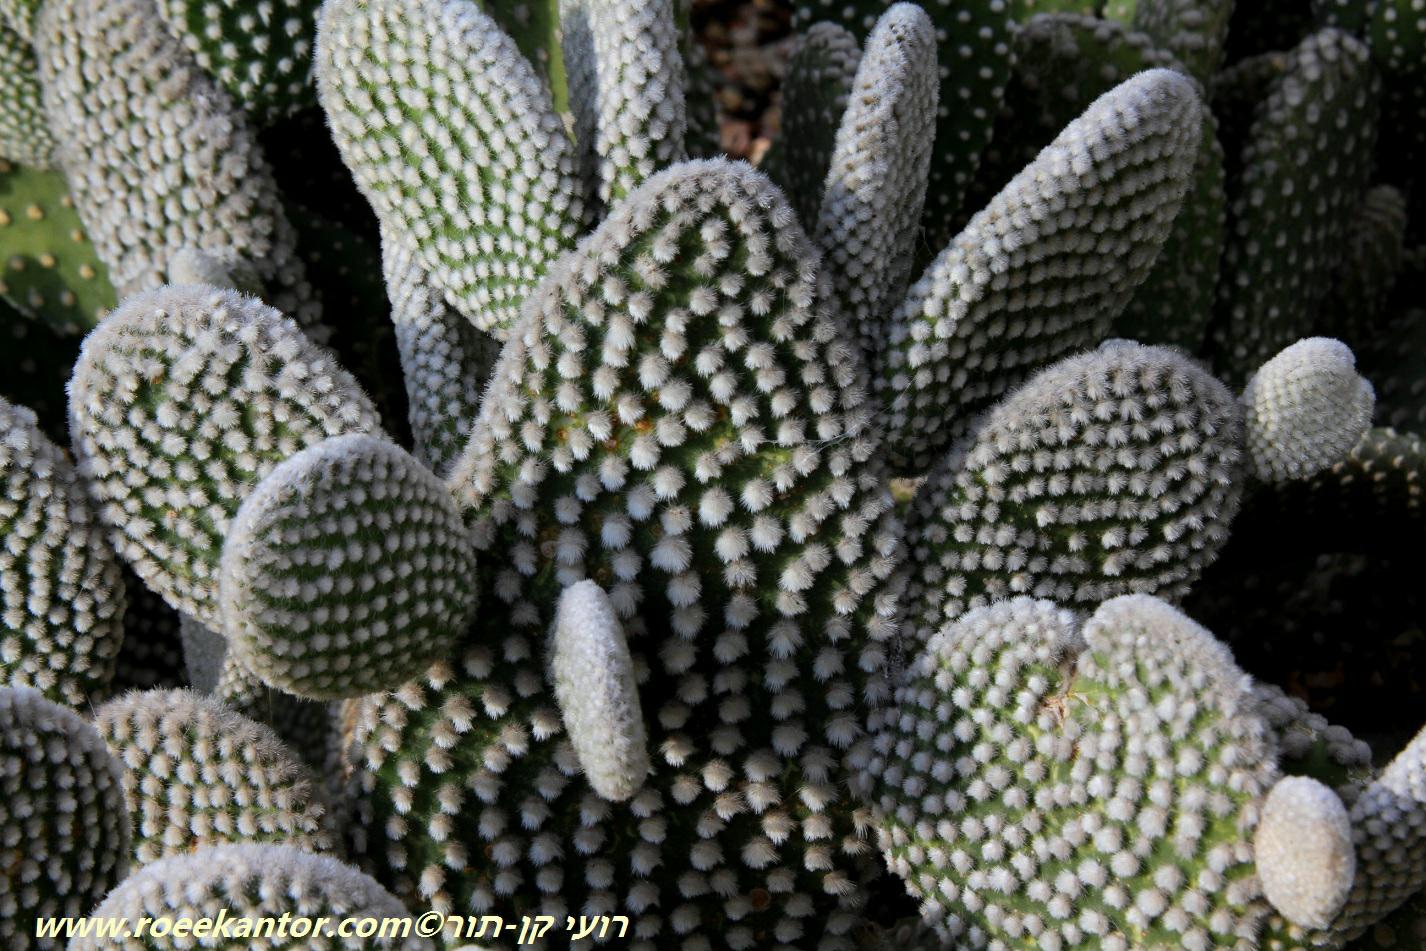 Opuntia microdasys - Bunny Ears, Dwarf Prickly Pear, Teddybear Cholla Cactus, צבר עב-שערות, צבר עב-שערות